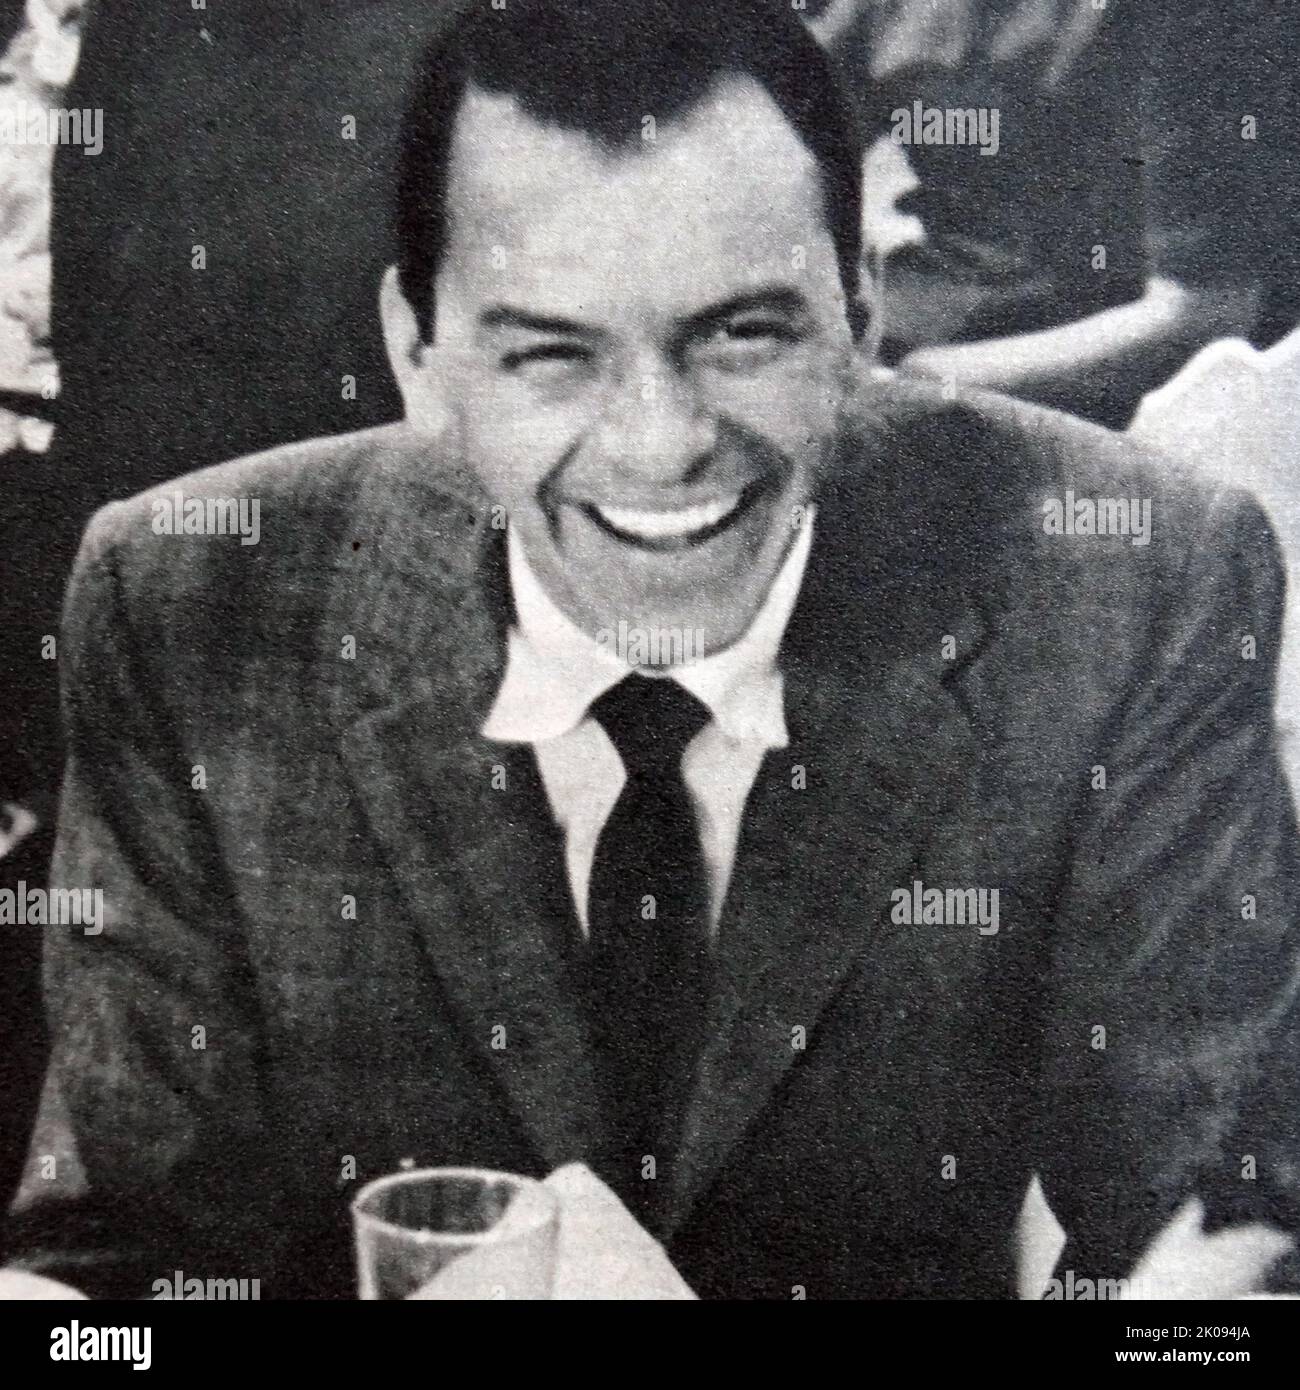 Découpe de journaux avec photographie de Frank Sinatra. Francis Albert Sinatra (12 décembre 1915 - 14 mai 1998) était un chanteur et acteur américain qui est généralement perçu comme l'un des plus grands artistes musicaux du 20th siècle. Il est l'un des artistes de musique les plus vendus de tous les temps, ayant vendu environ 150 millions de disques dans le monde. Banque D'Images